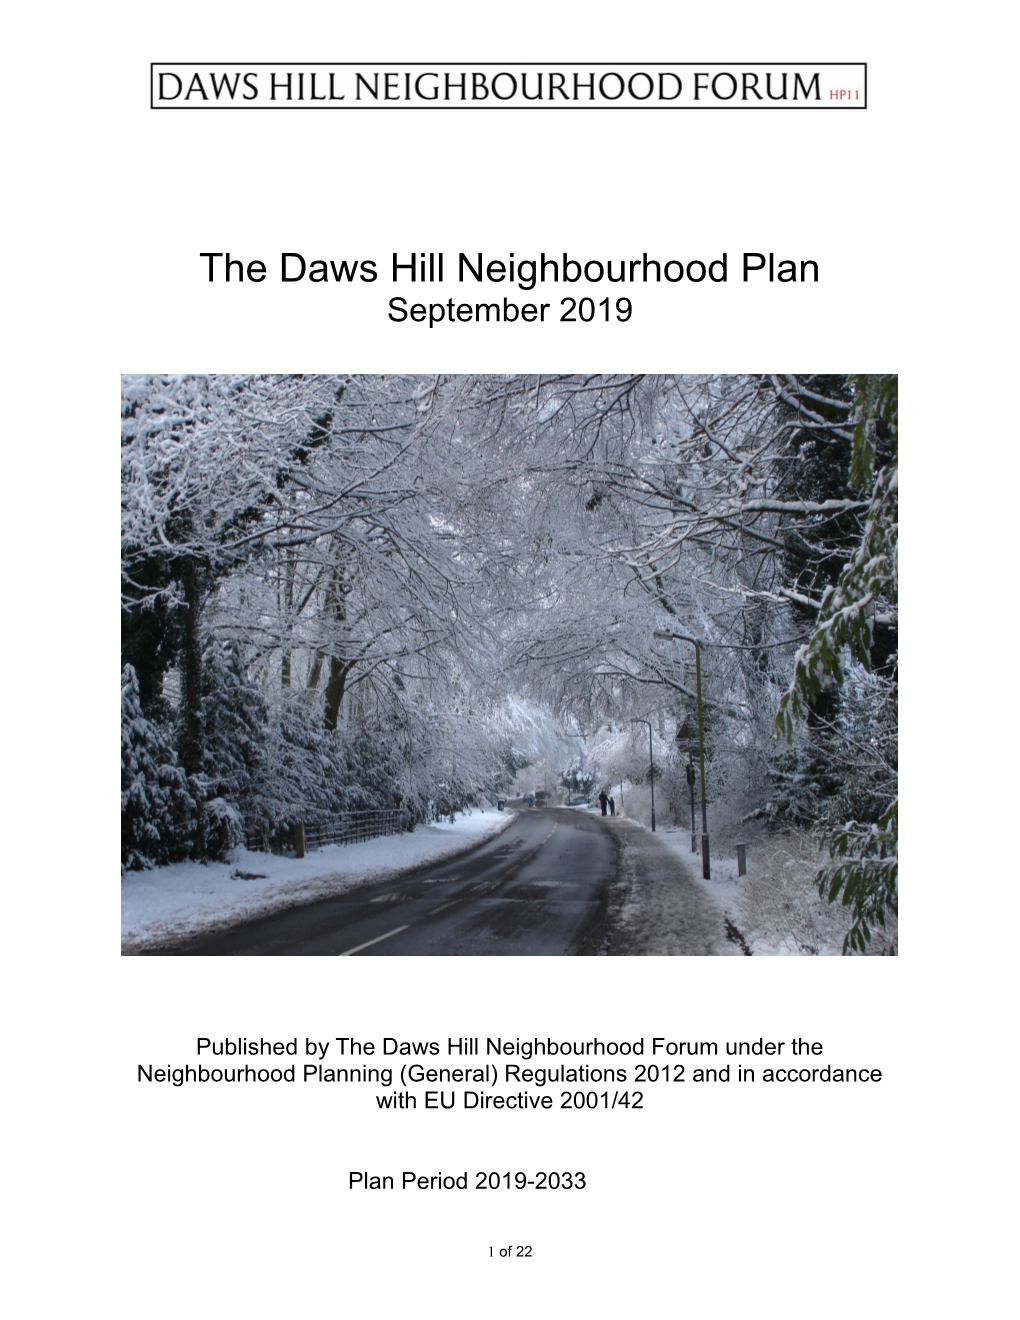 The Daws Hill Neighbourhood Plan September 2019